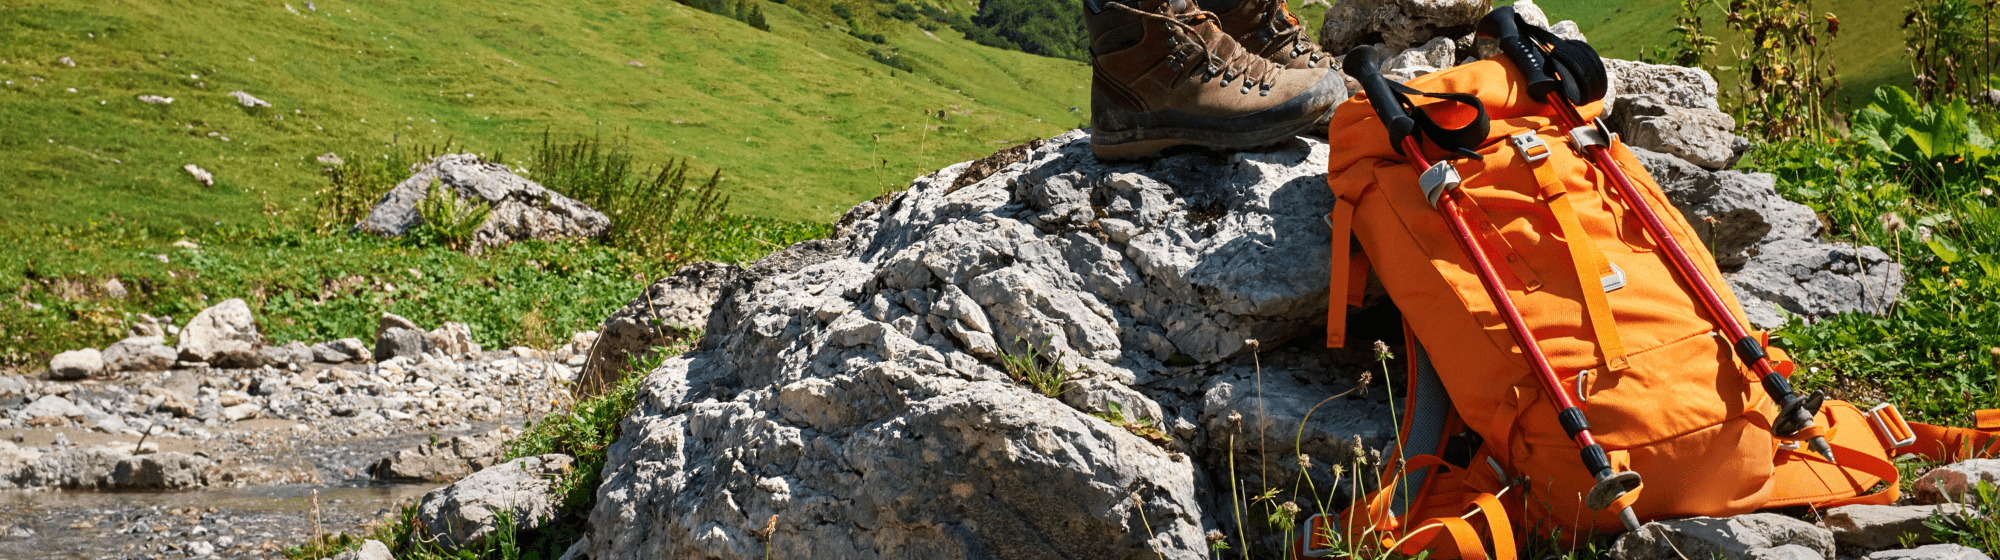 affaires de randonnée posées sur un rocher